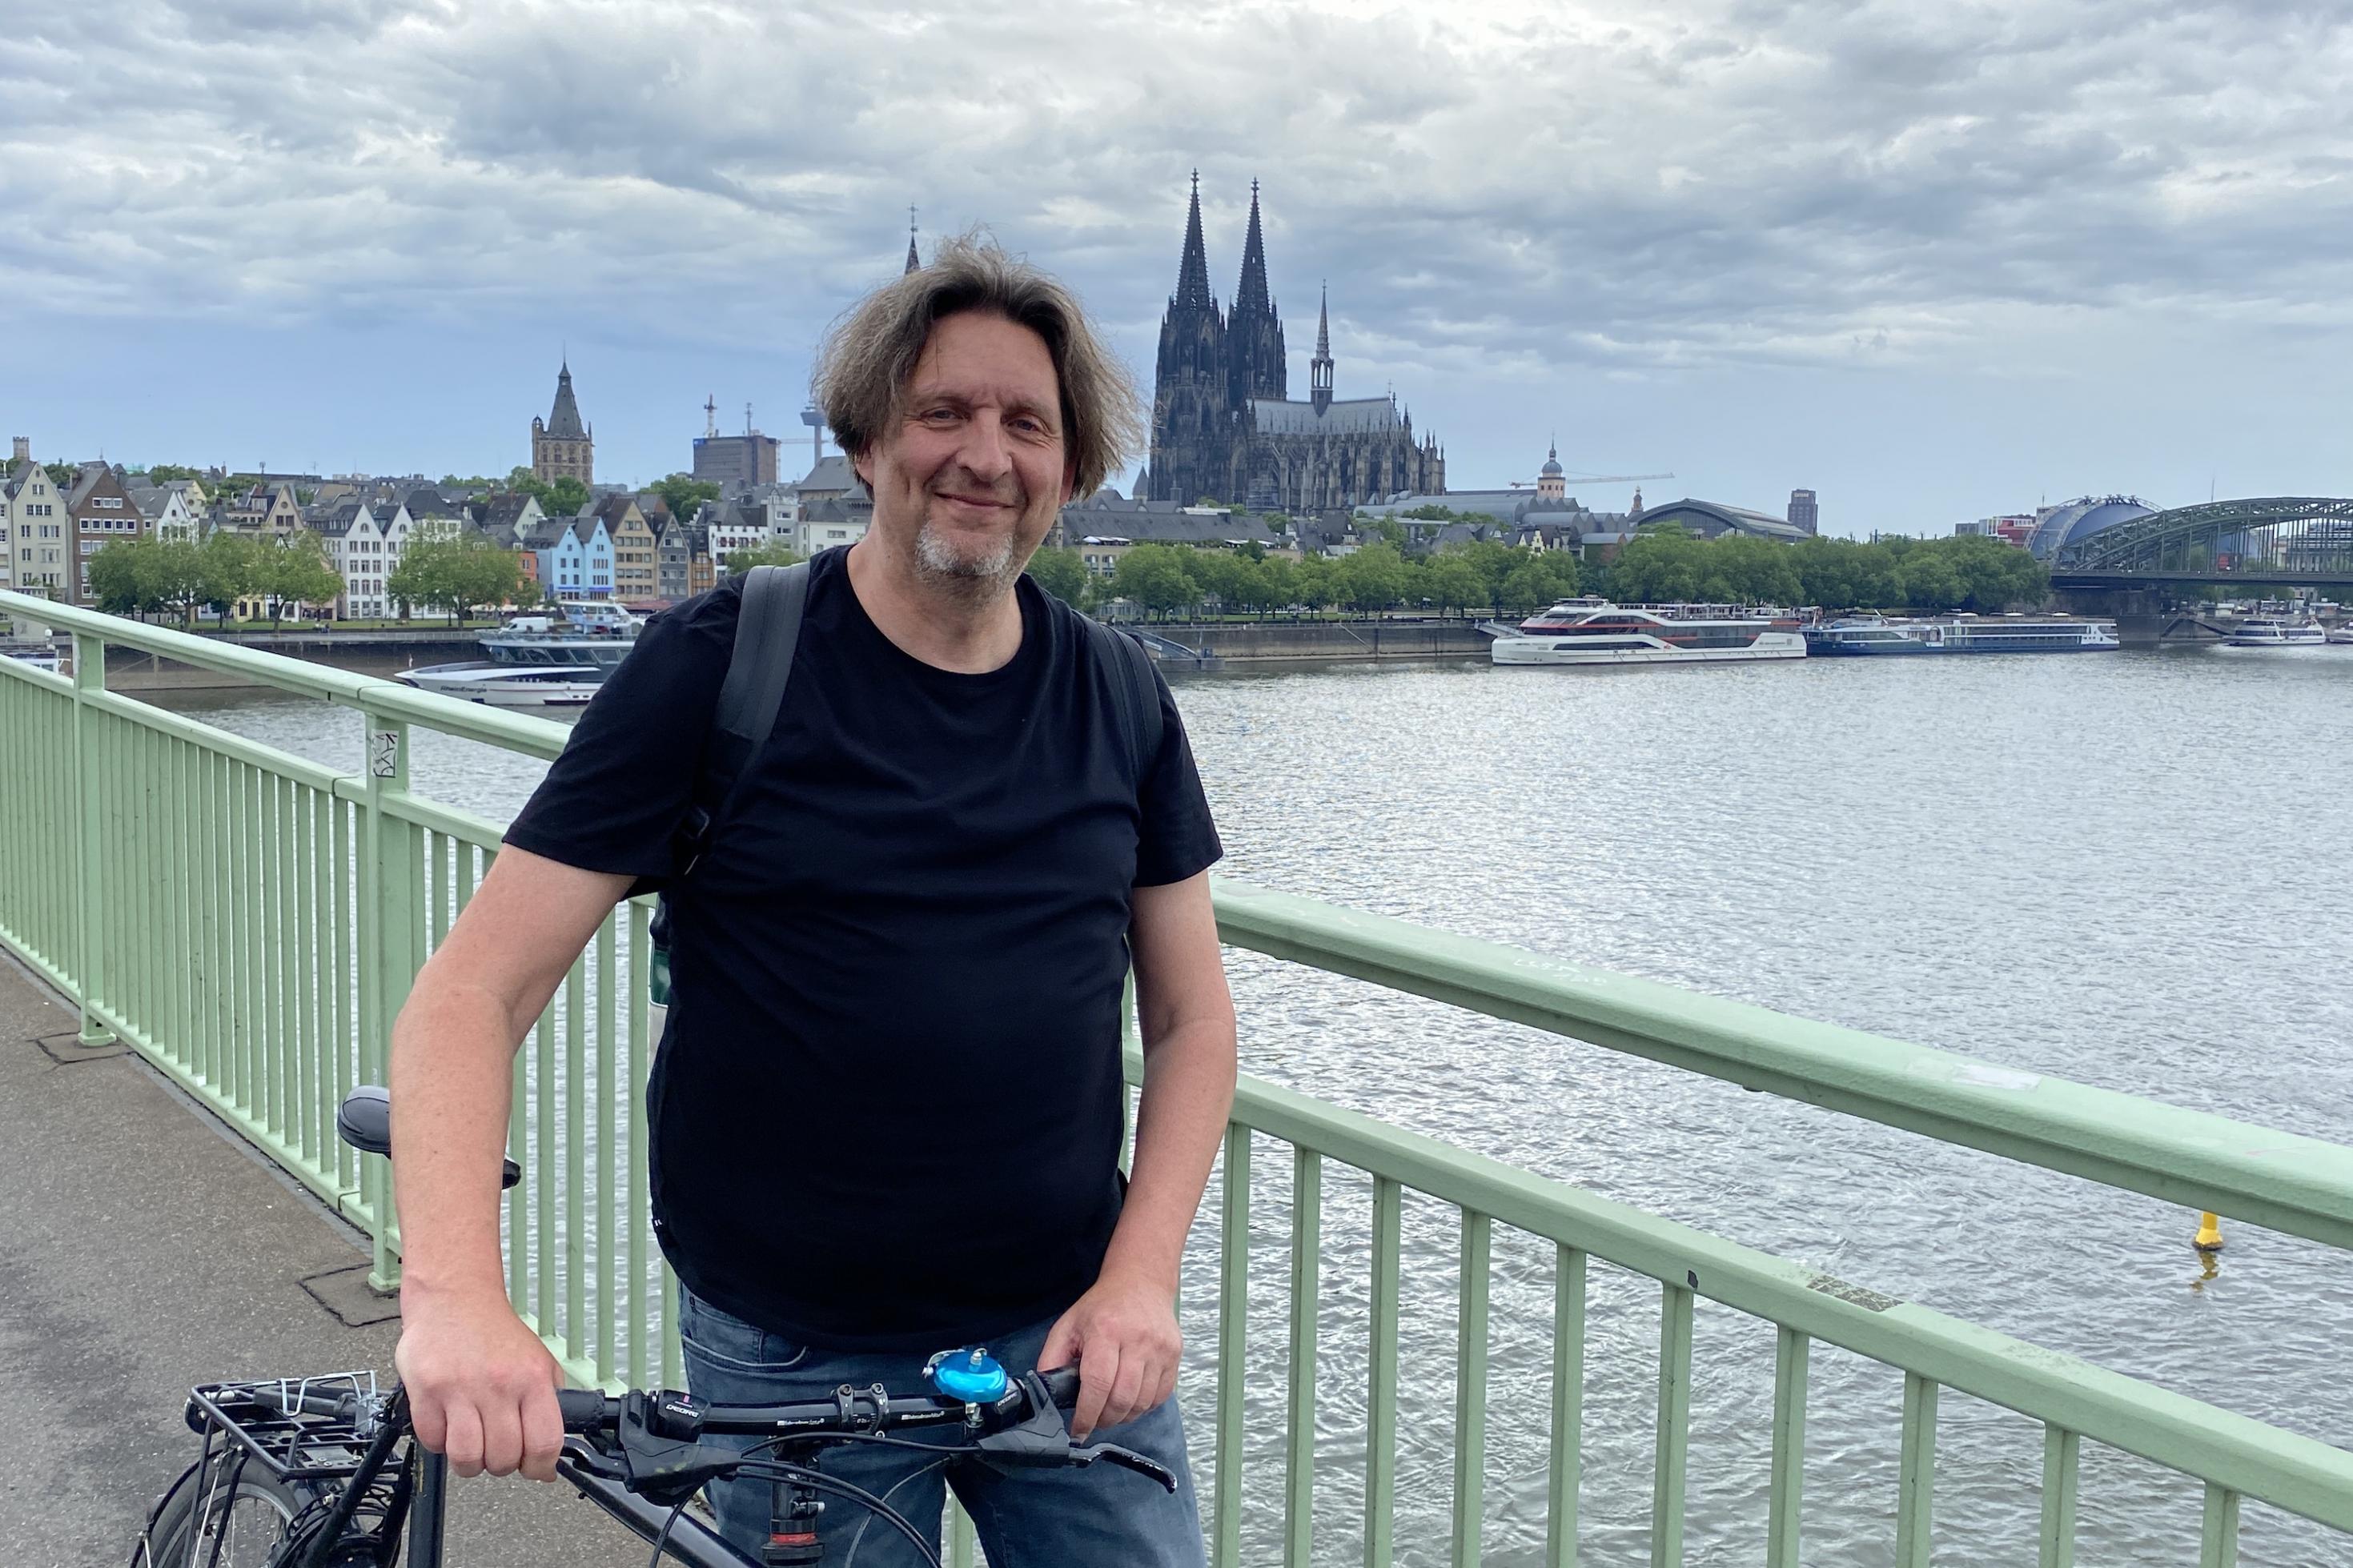 Ein Mann steht mit seinem Fahrrad auf einer Brücke. Im Hintergrund ist der Kölner Dom zu sehen.